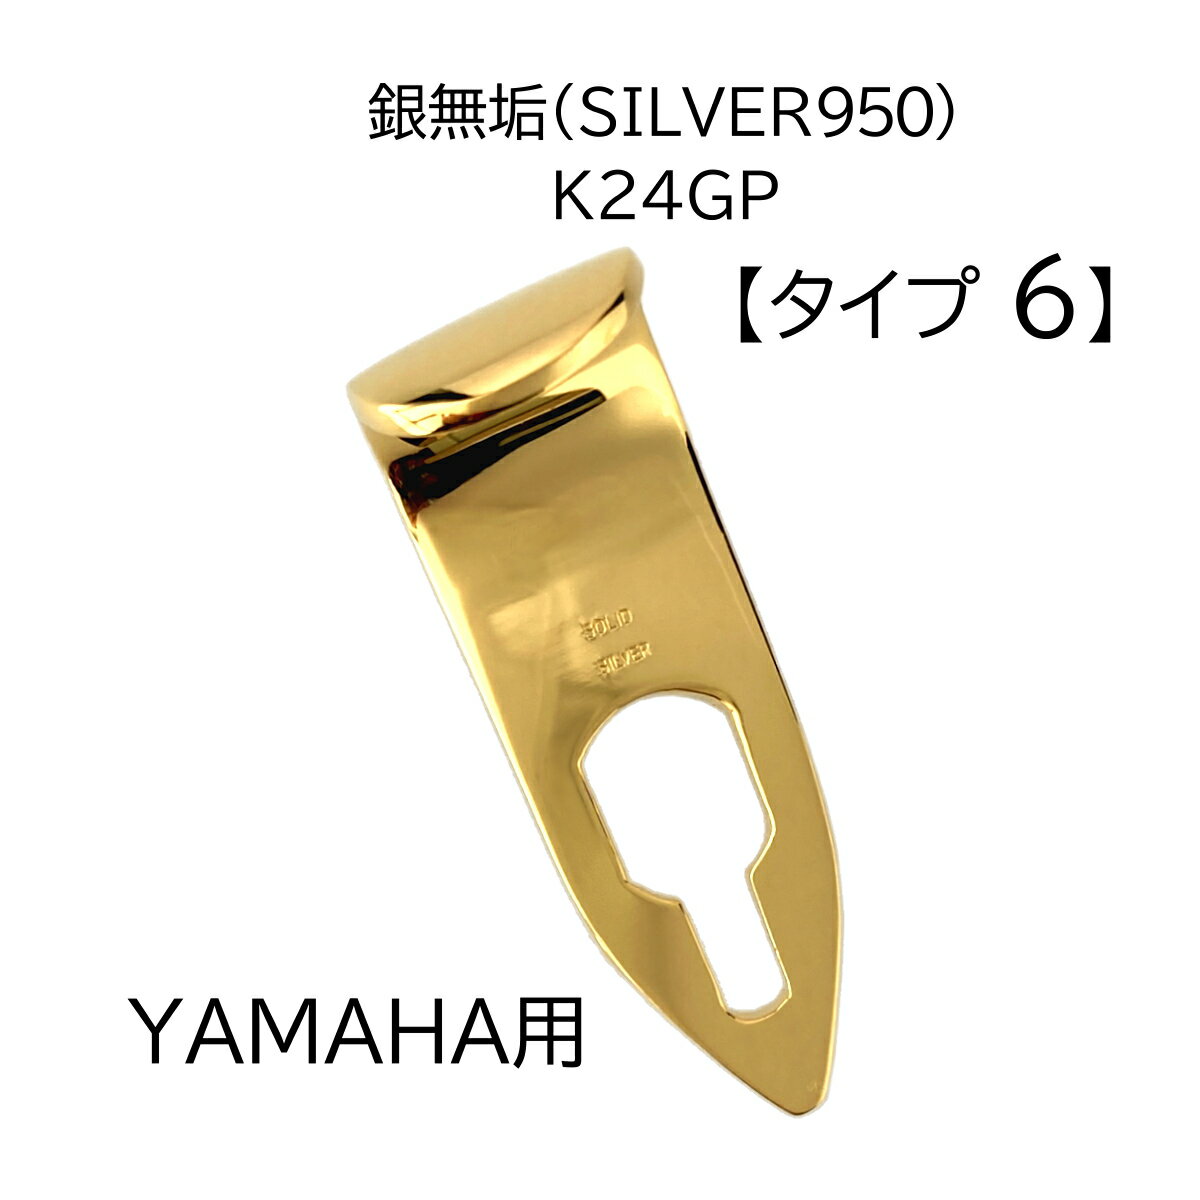 TH-SV6-K24GP 商品説明 メーカー名 Earrs Sax（イヤーズサックス） 当店オリジナル 日本製 適合ブランド ヤマハ 適合タイプ ソプラノ・アルト・テナー・バリトン 素　材 銀（シルバー950）製　『SOLID SILVER』刻印入 24金メッキ 重　量 29.5g サイズ ◆長さ（外）：55mm～57mm（左右の高さが異なる） ◆幅：19.5mm ◆厚さ：2.5mm～3.0mm（箇所によって厚みが異なる） ◆穴の大きさ：画像参照 特　徴 当店オリジナル、ハンドメイドの ヤマハサックス用 銀製サムフックです。 SOLID SILVER サムフックに換えることによって、サックス本体のポテンシャルを引き出し、繊細な音から力強い音まで、心地よいレスポンスを感じることができます。 特に低音の表現力が豊かで、落ち着いた品のある柔らかい音になります。 さらに、24金メッキを施すことにより、音に華やかさが加わり、ゴージャスな音色になります。 ※音の特徴は、金属固有の特性に由来するものですが、感じ方には個人差があります。 注　意 ハンドメイド製品であるため、サイズには誤差がございます。